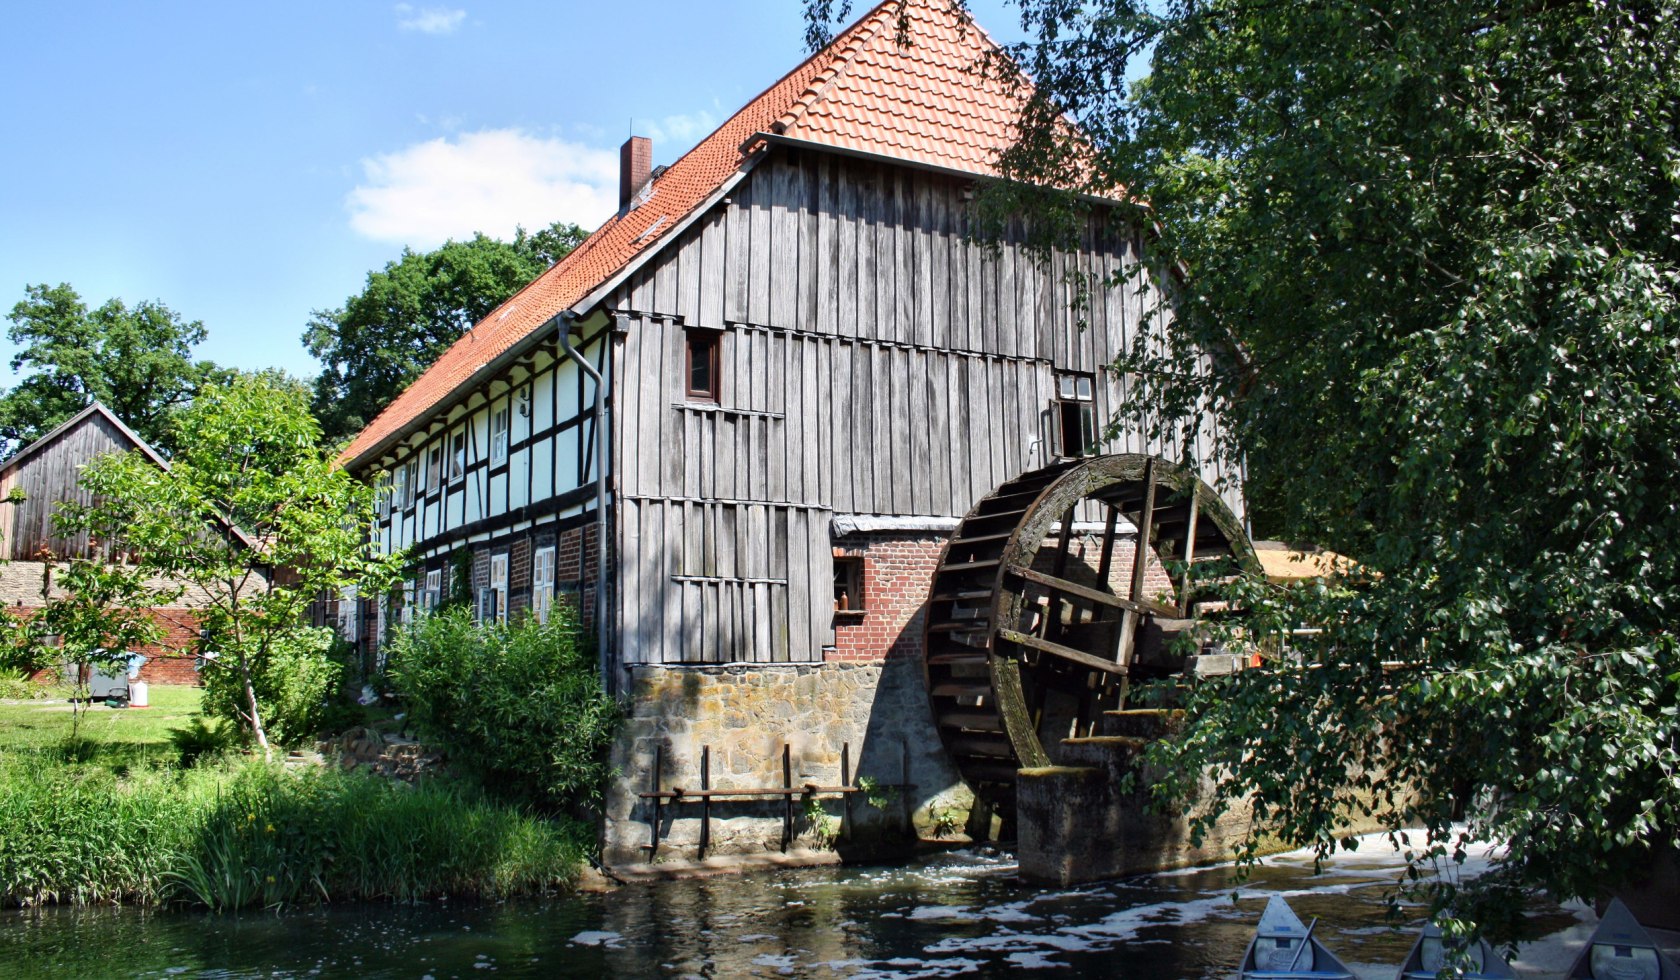 Eltzer mill at the Fuhse, © Dieter Goldmann / pixelio